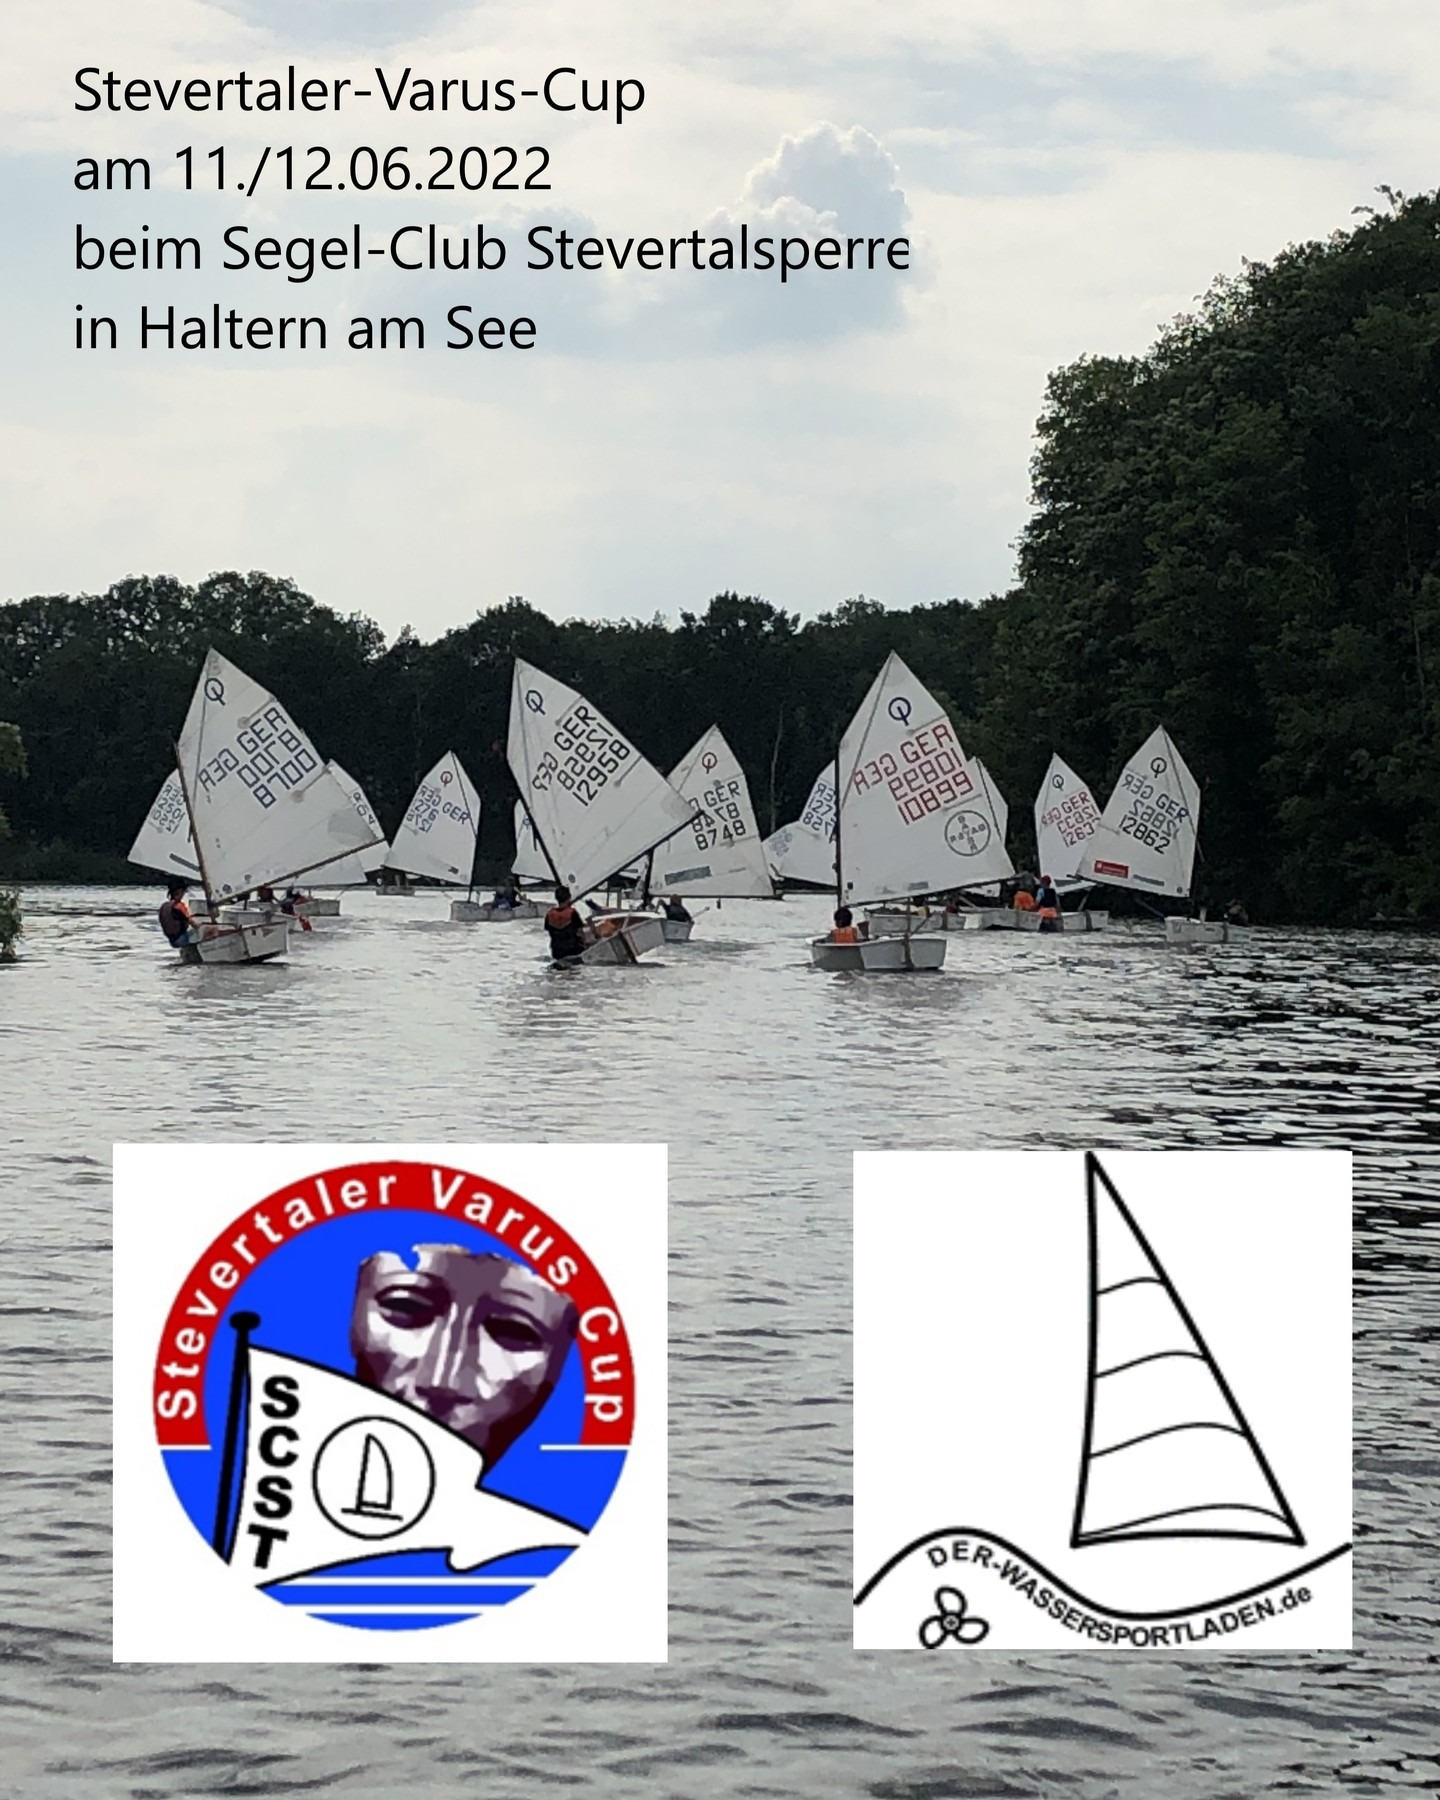 Noch 24 Tage bis zum Stevertaler Varus Cup – die Opti B+C Regatta beim Segel-Club Stevertalsperre in Haltern am See. Details zur Regatta und Anmeldung unter: https://www.manage2sail.com/de-DE/event/SVC2022#!/